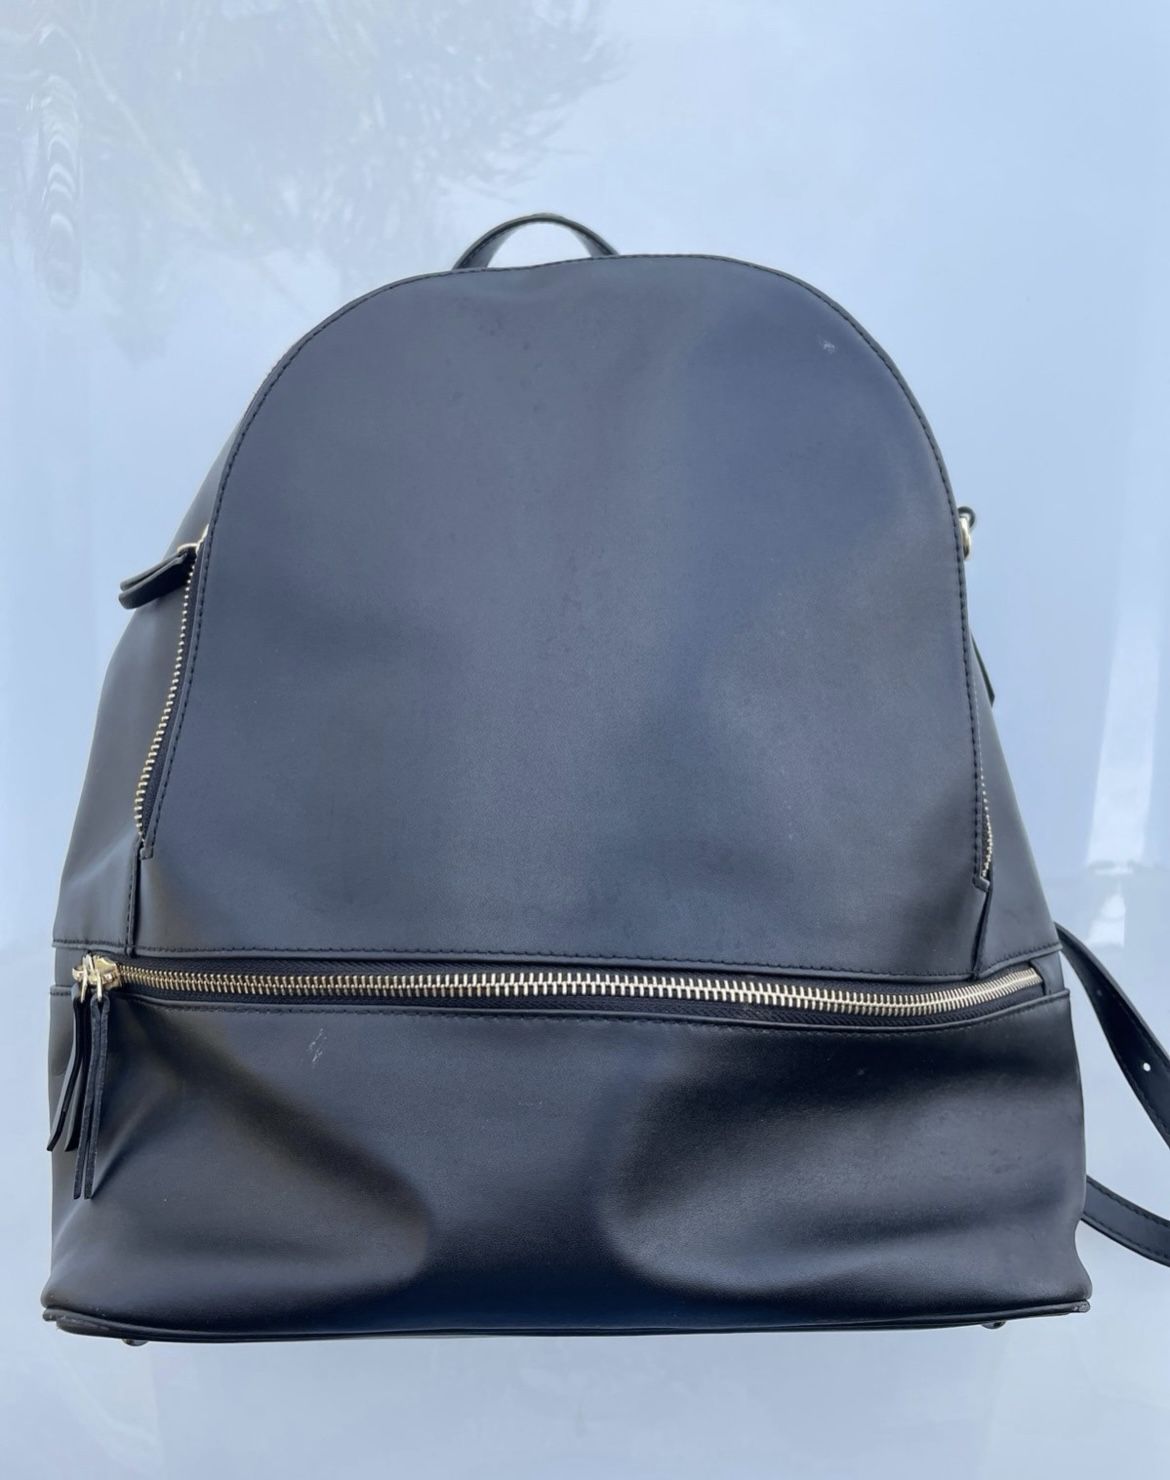 Black Backpack Leather Travel Bag